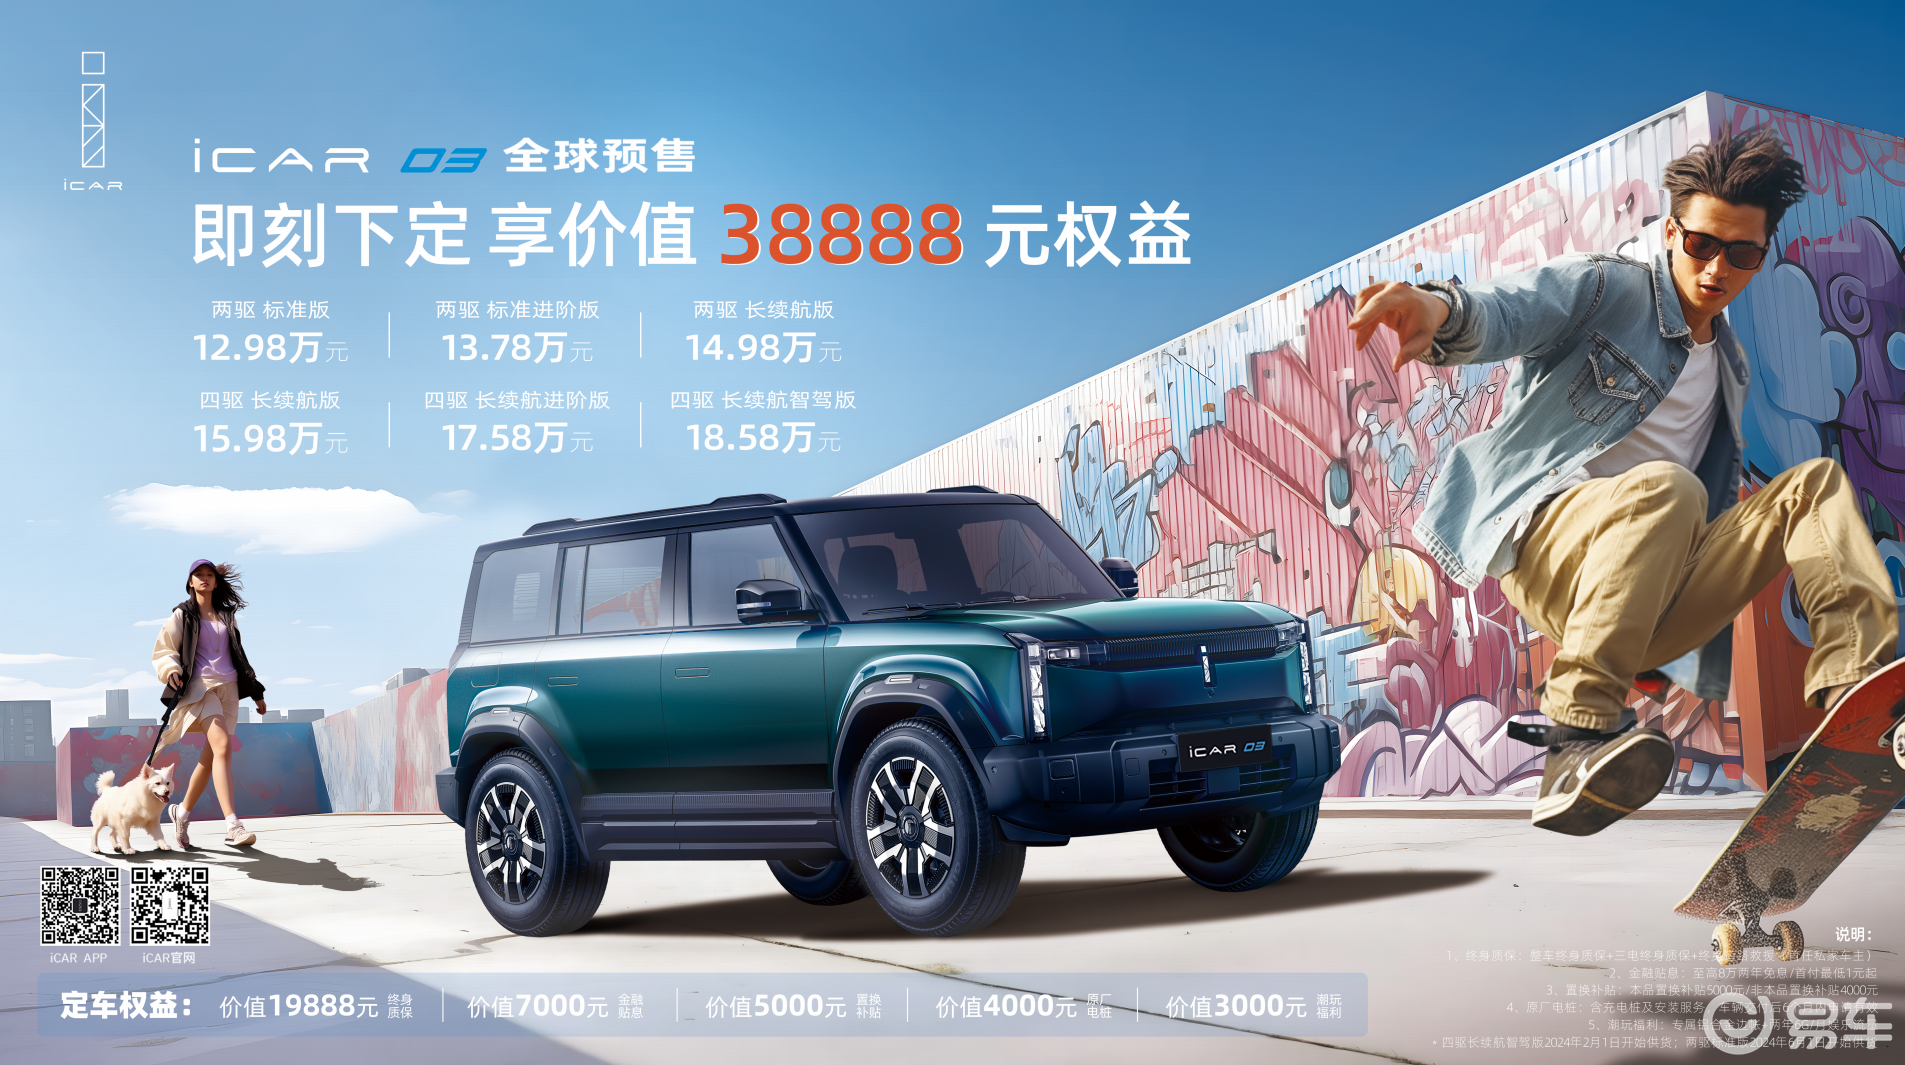 “潮盒电动SUV”iCAR 03预售起售价12.98万元